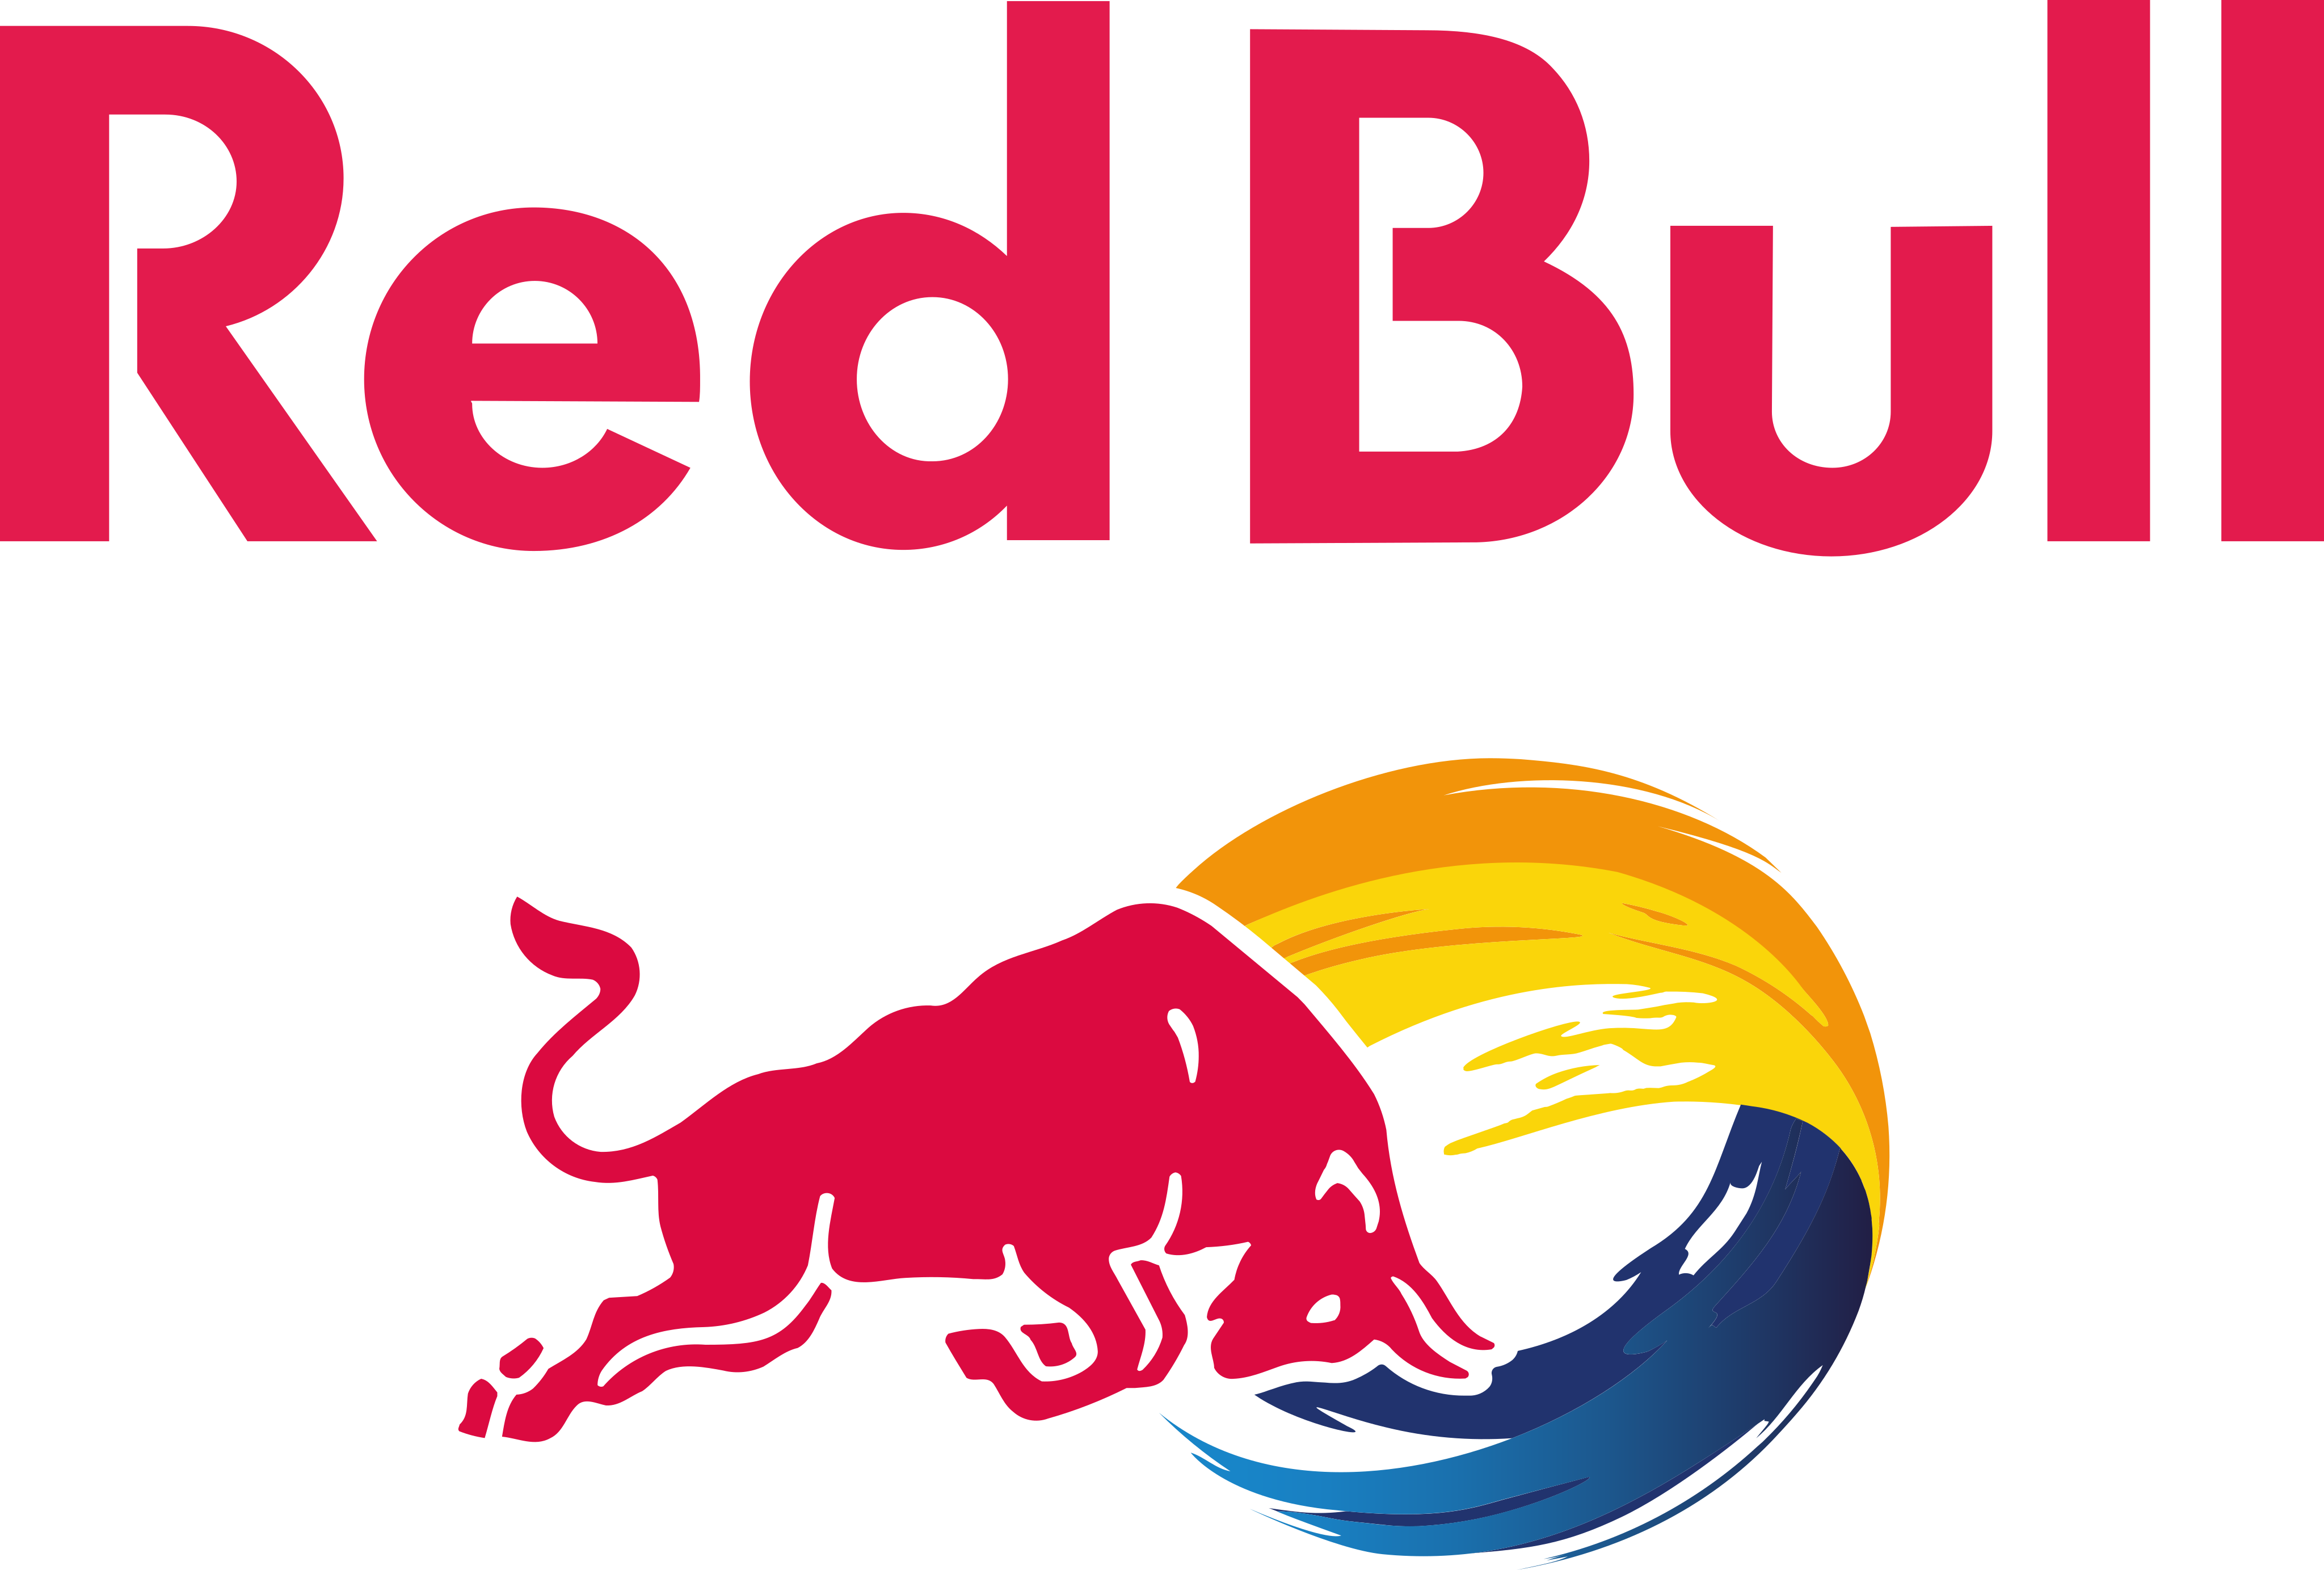 Red Bull Logo.